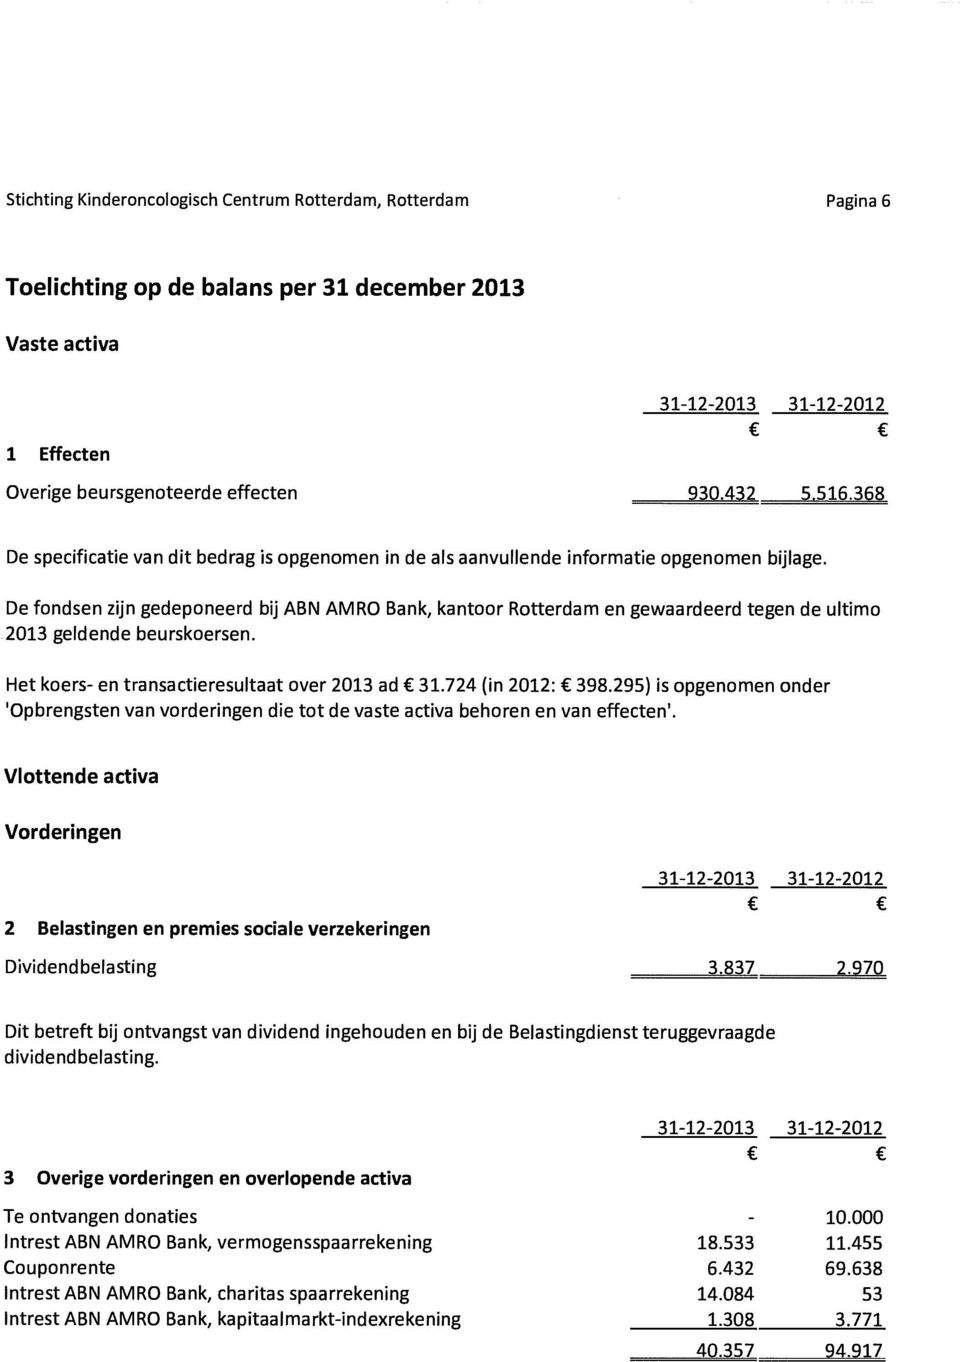 De fondsen zijn gedeponeerd bij ABN AMRO Bank, kantoor Rotterdam en gewaardeerd tegen de ultimo 2013 geldende beurskoersen. Het koers- en transactieresultaat over 2013 ad 31.724 (in 2012: 398.